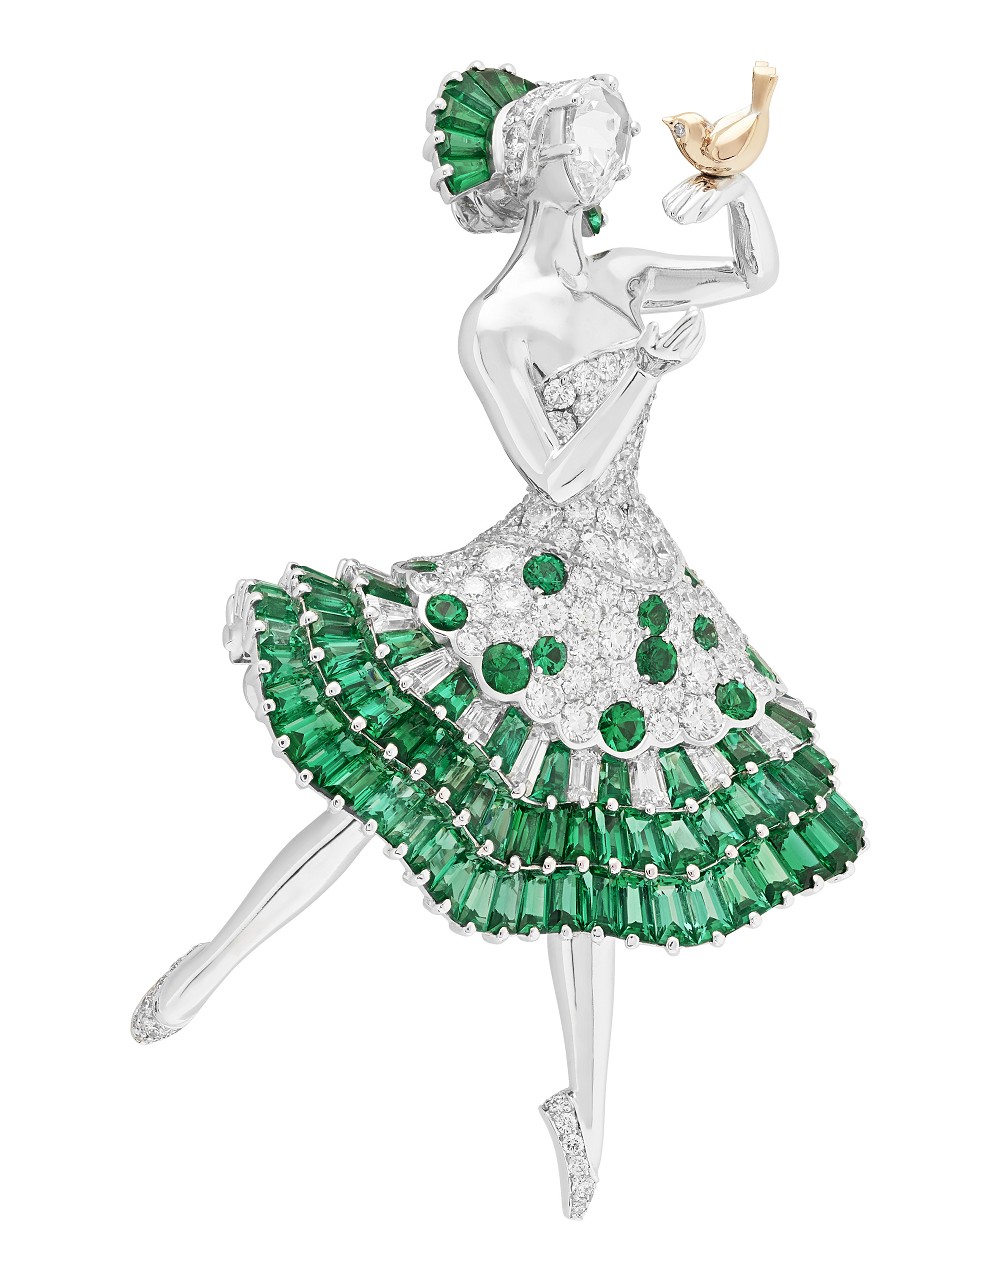 梵克雅宝Van Cleef & Arpels 推出两枚人物造型珠宝胸针:舞伶与仙女 – 我爱钻石网官方网站